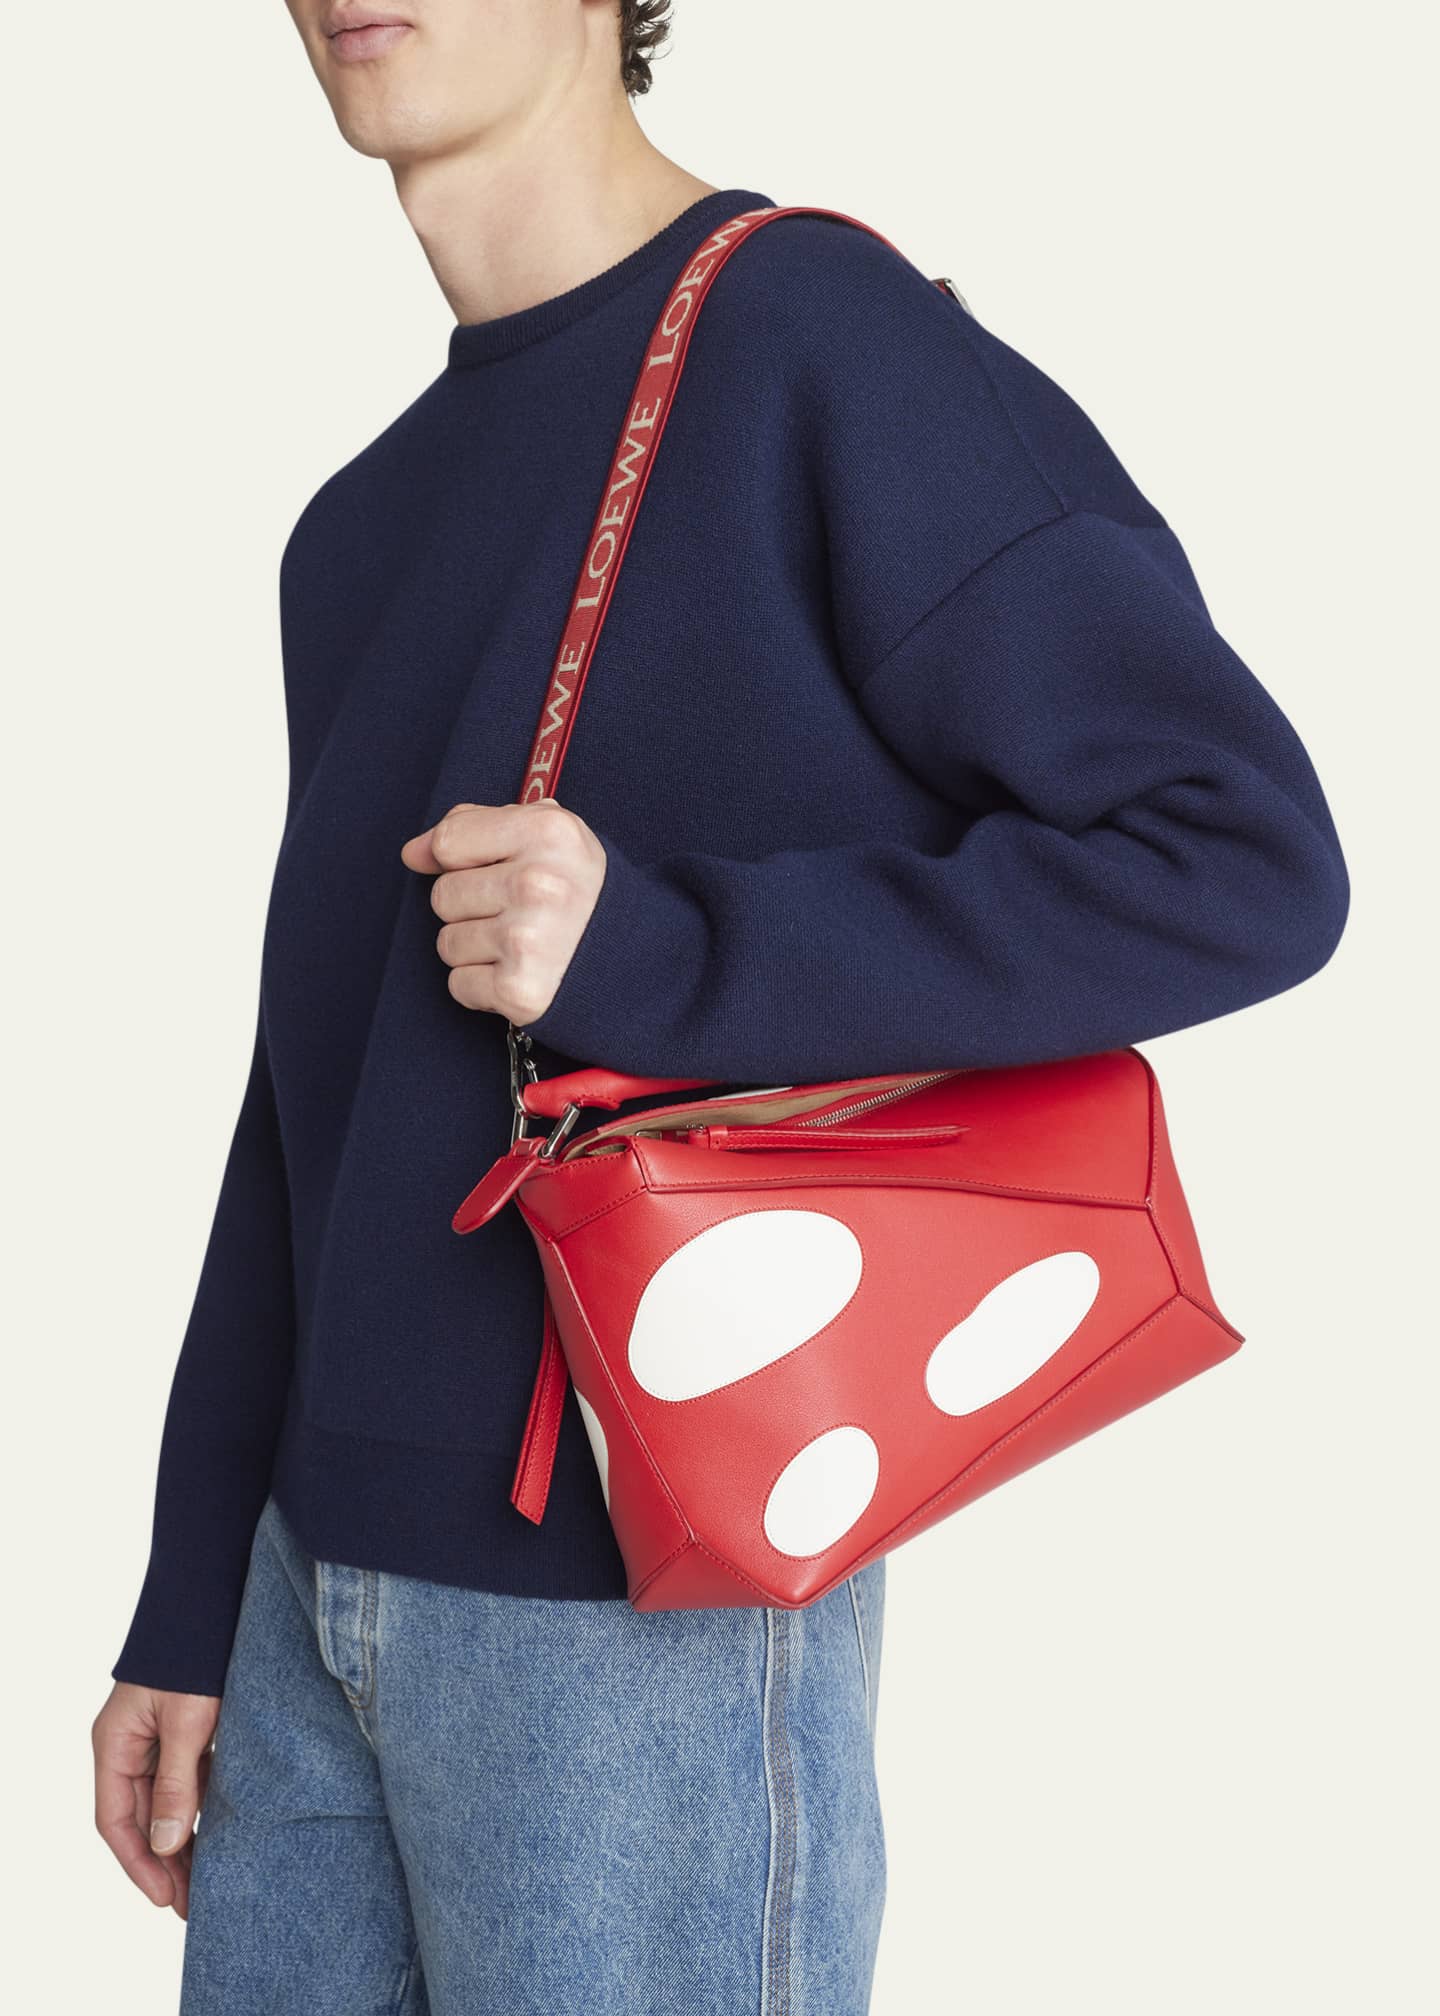 Mushroom Sling Backpack, Mushroom Crossbody Bag For Women Men